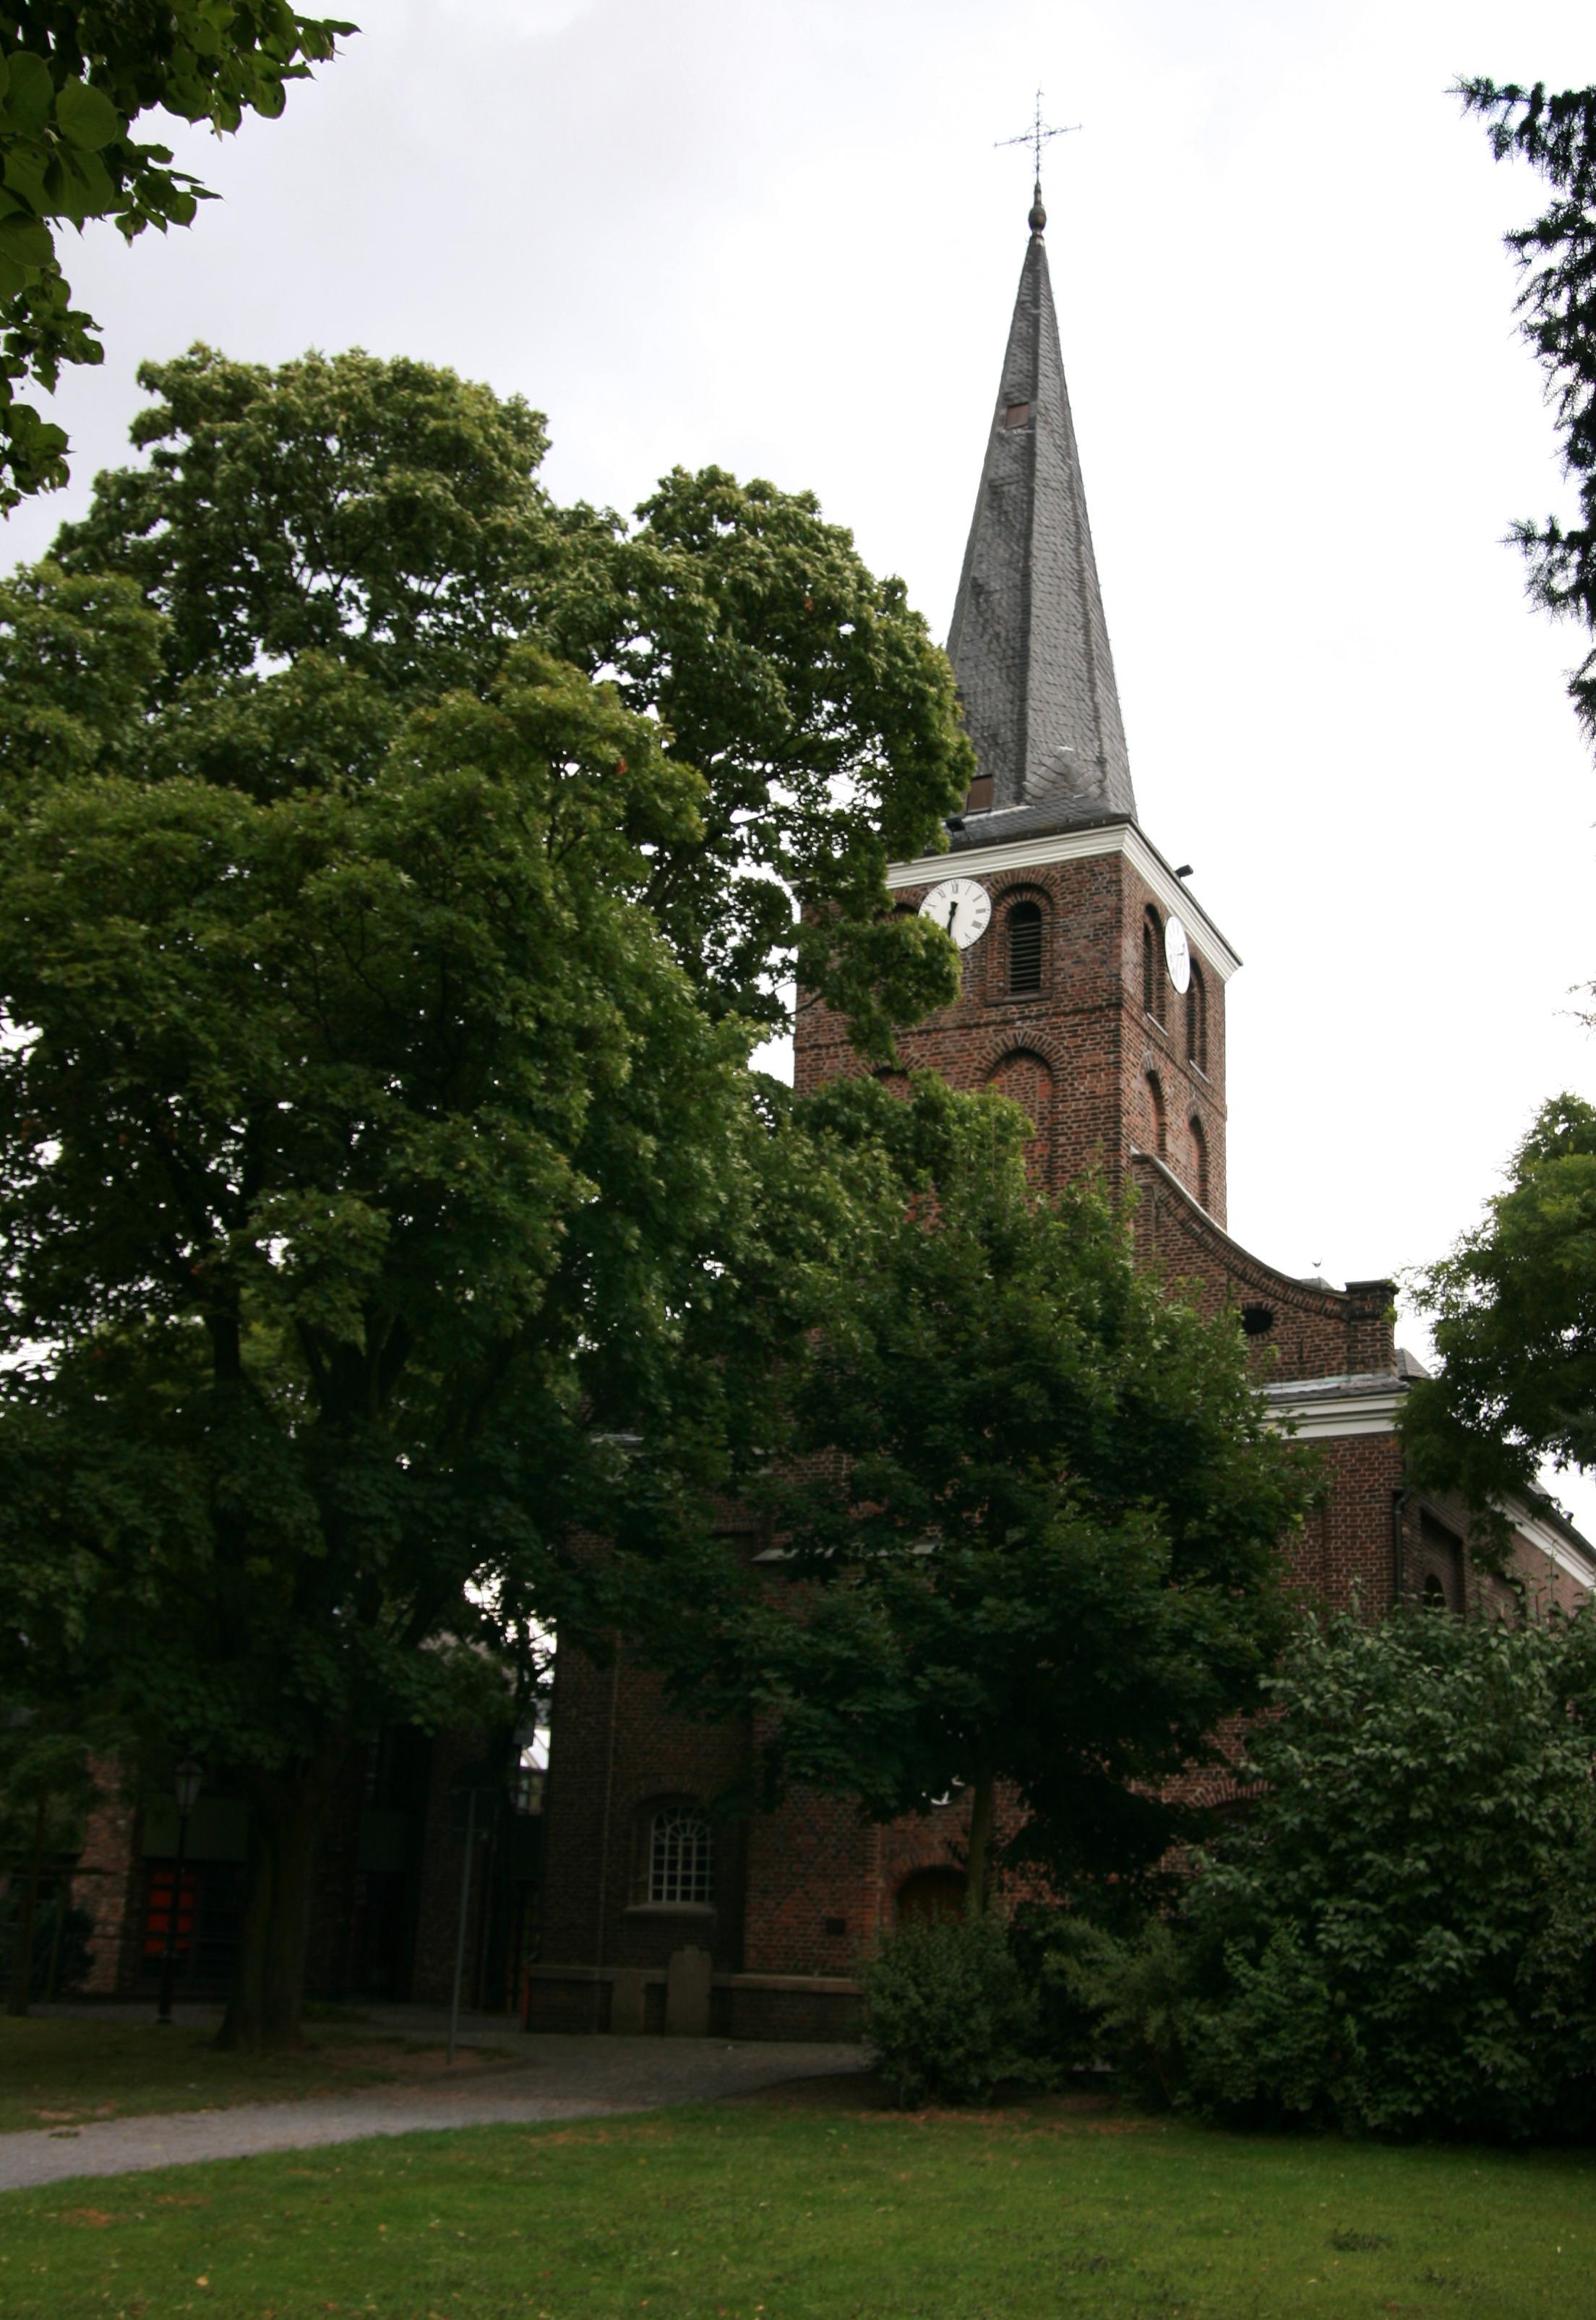 Die Dorfkirche in Vluyn wurde im 13. Jahrhundert als Kapelle erbaut und erhielt 1450 ihren Glockenturm. Seit 1580 ist sie evangelisch und seit 1614 eigenständige Pfarrkirche. Im Jahre 1715 wurde am selben Ort unser heutiges Kirchenschiff errichtet, der Ki